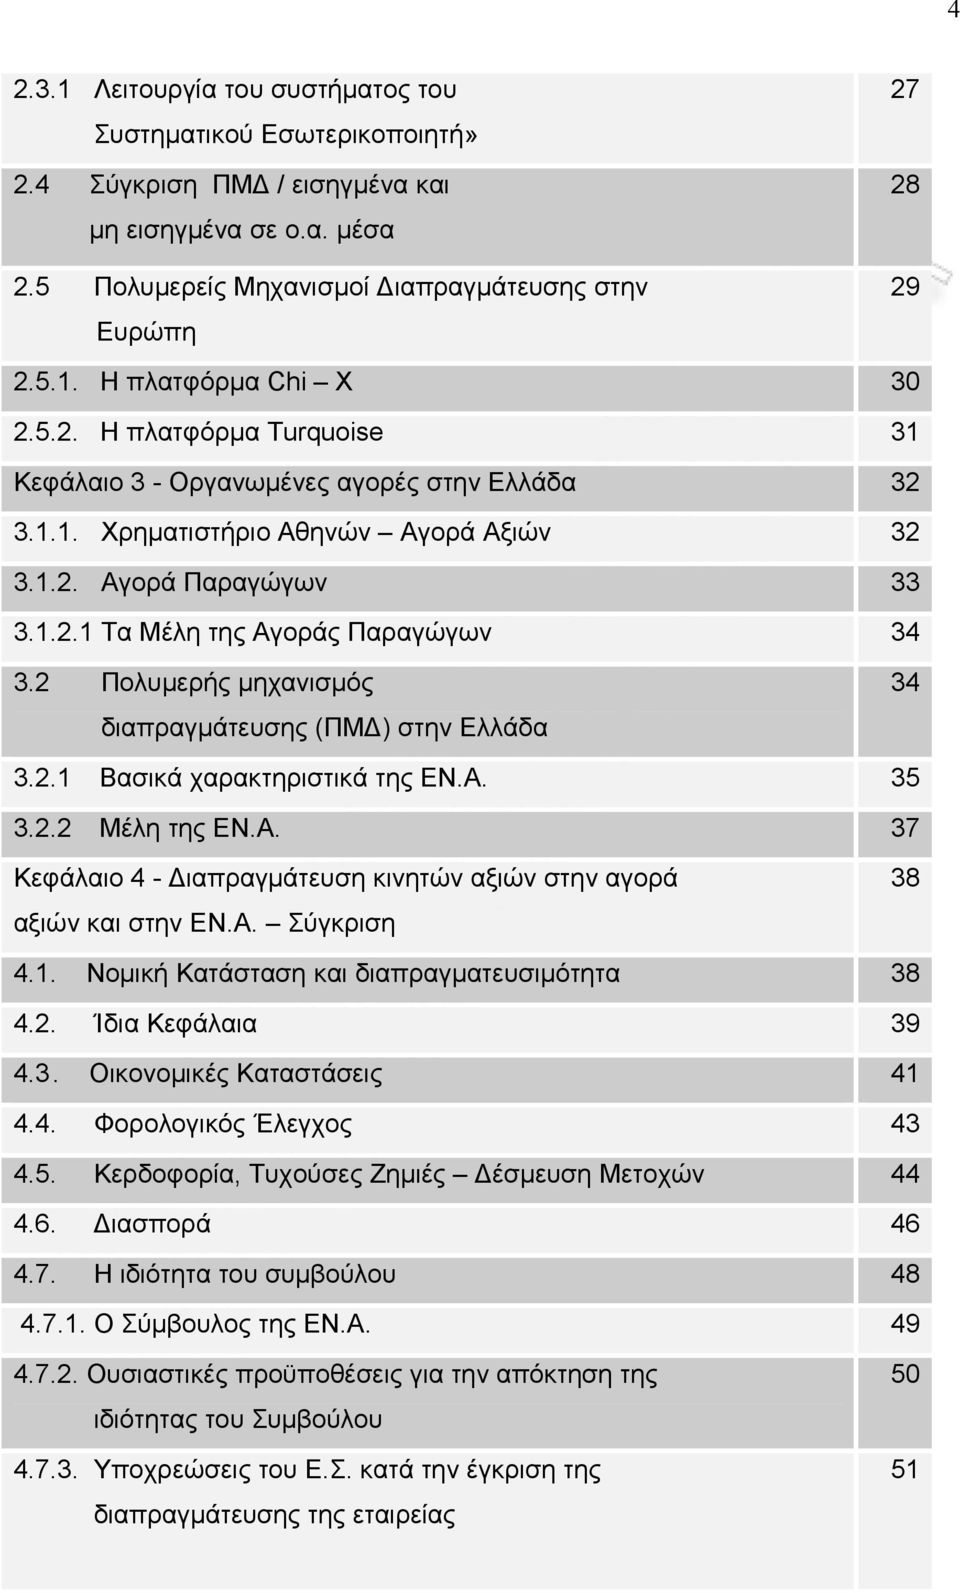 2 Πολυμερής μηχανισμός διαπραγμάτευσης (ΠΜΔ) στην Ελλάδα 34 3.2.1 Βασικά χαρακτηριστικά της ΕΝ.Α. 35 3.2.2 Μέλη της ΕΝ.Α. 37 Κεφάλαιο 4 - Διαπραγμάτευση κινητών αξιών στην αγορά αξιών και στην ΕΝ.Α. Σύγκριση 38 4.